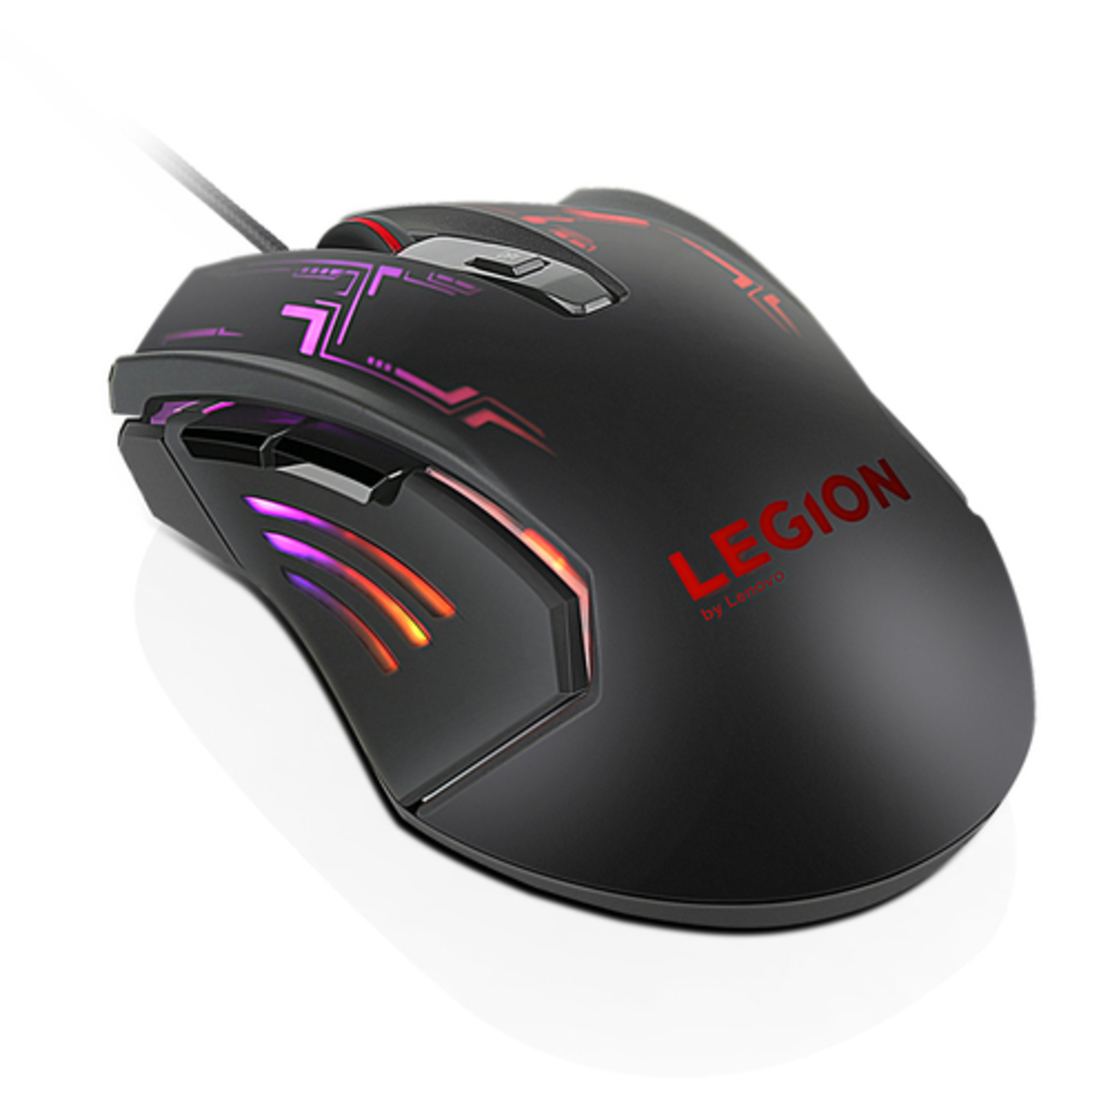 Lenovo Legion M200 RGB Gaming Mouse-WW GX30P93886